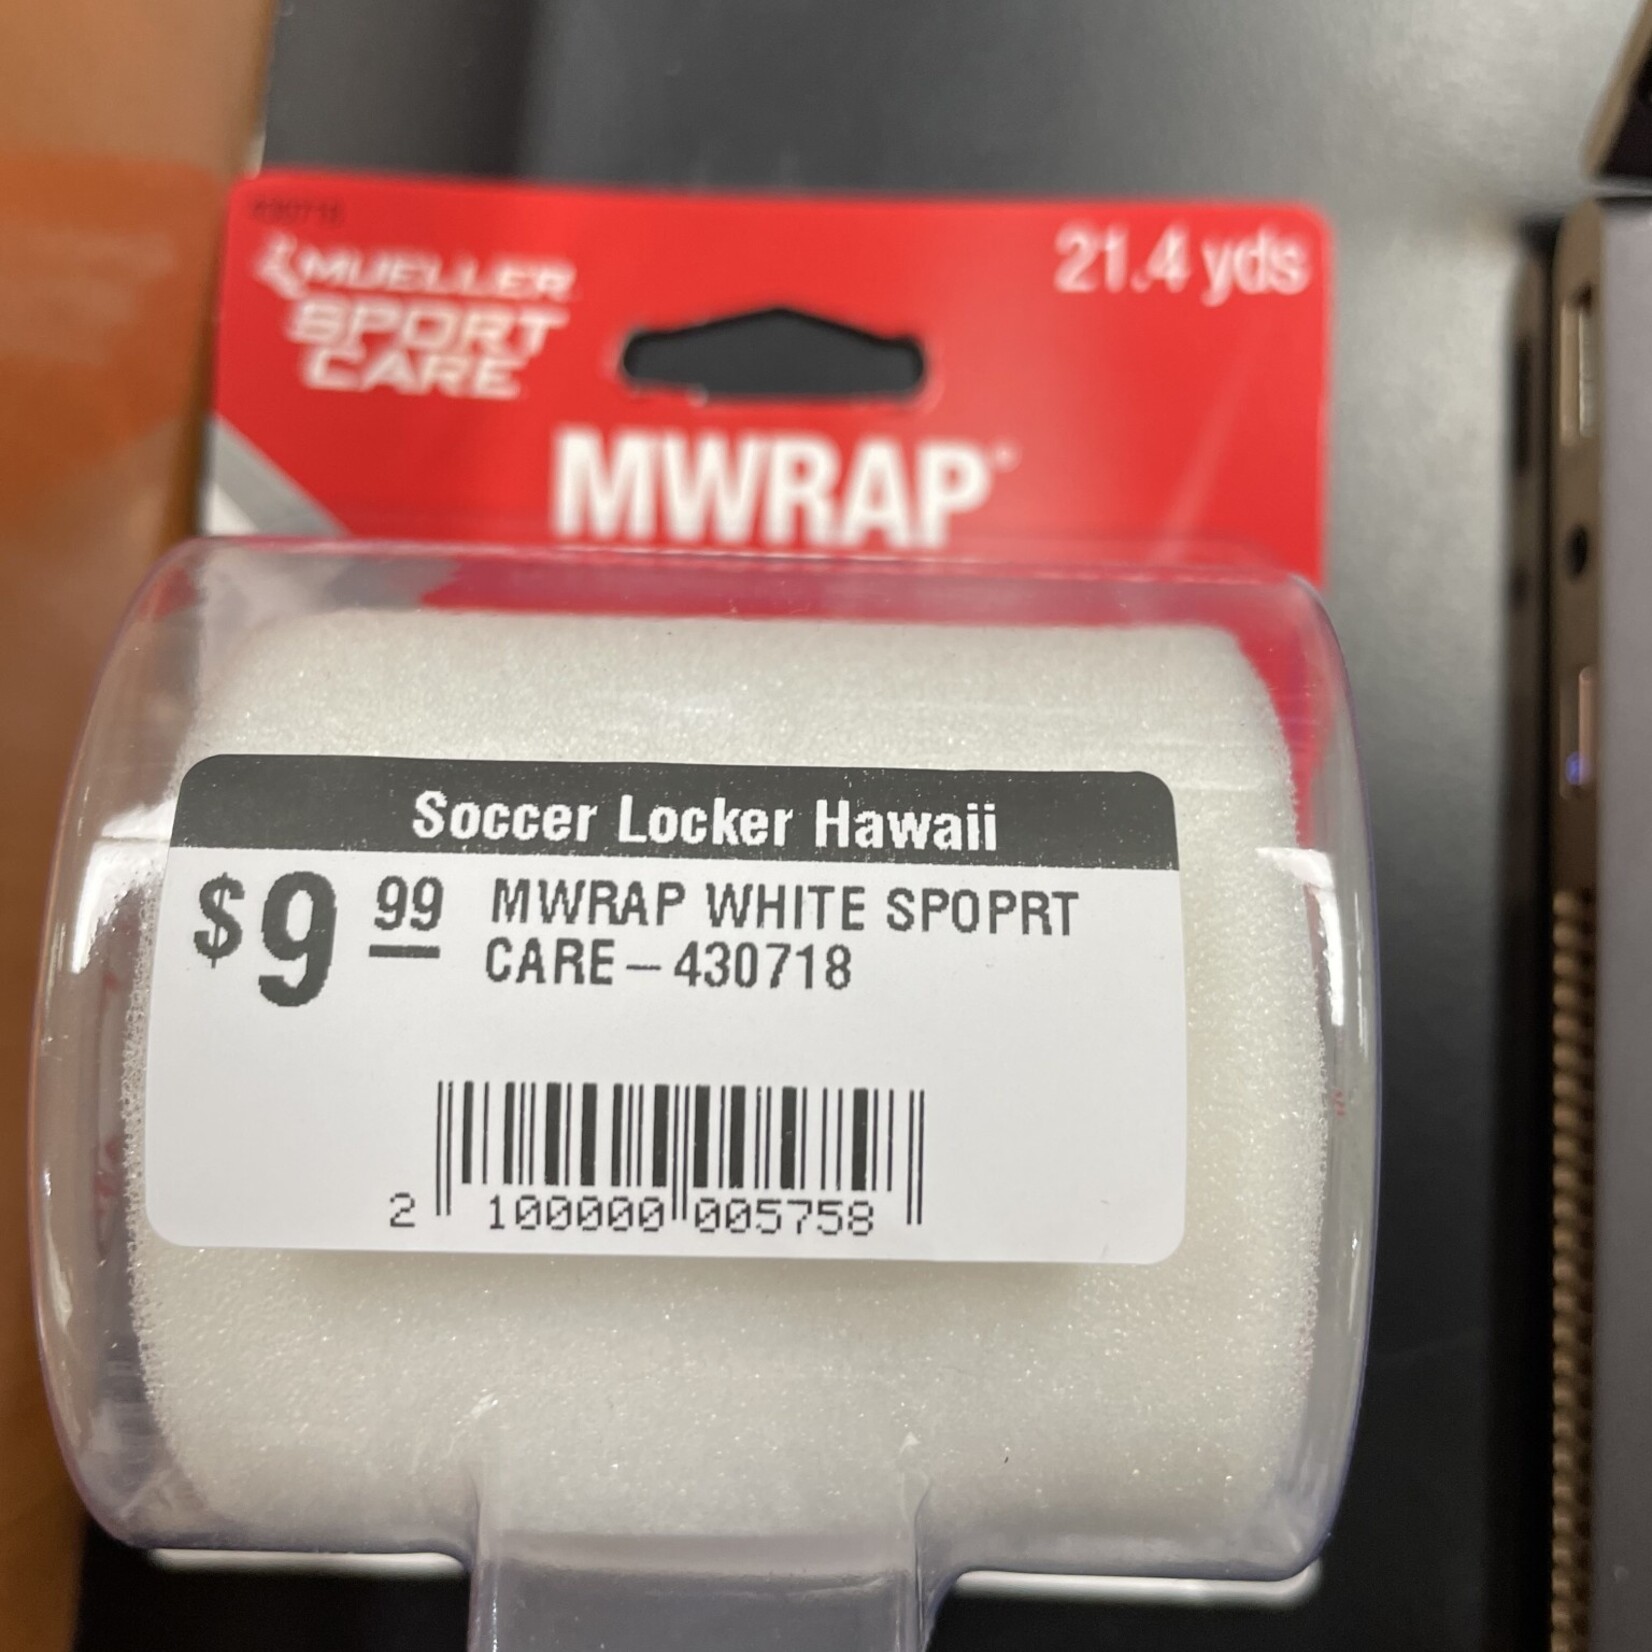 MWRAP WHITE SPOPRT CARE-430718